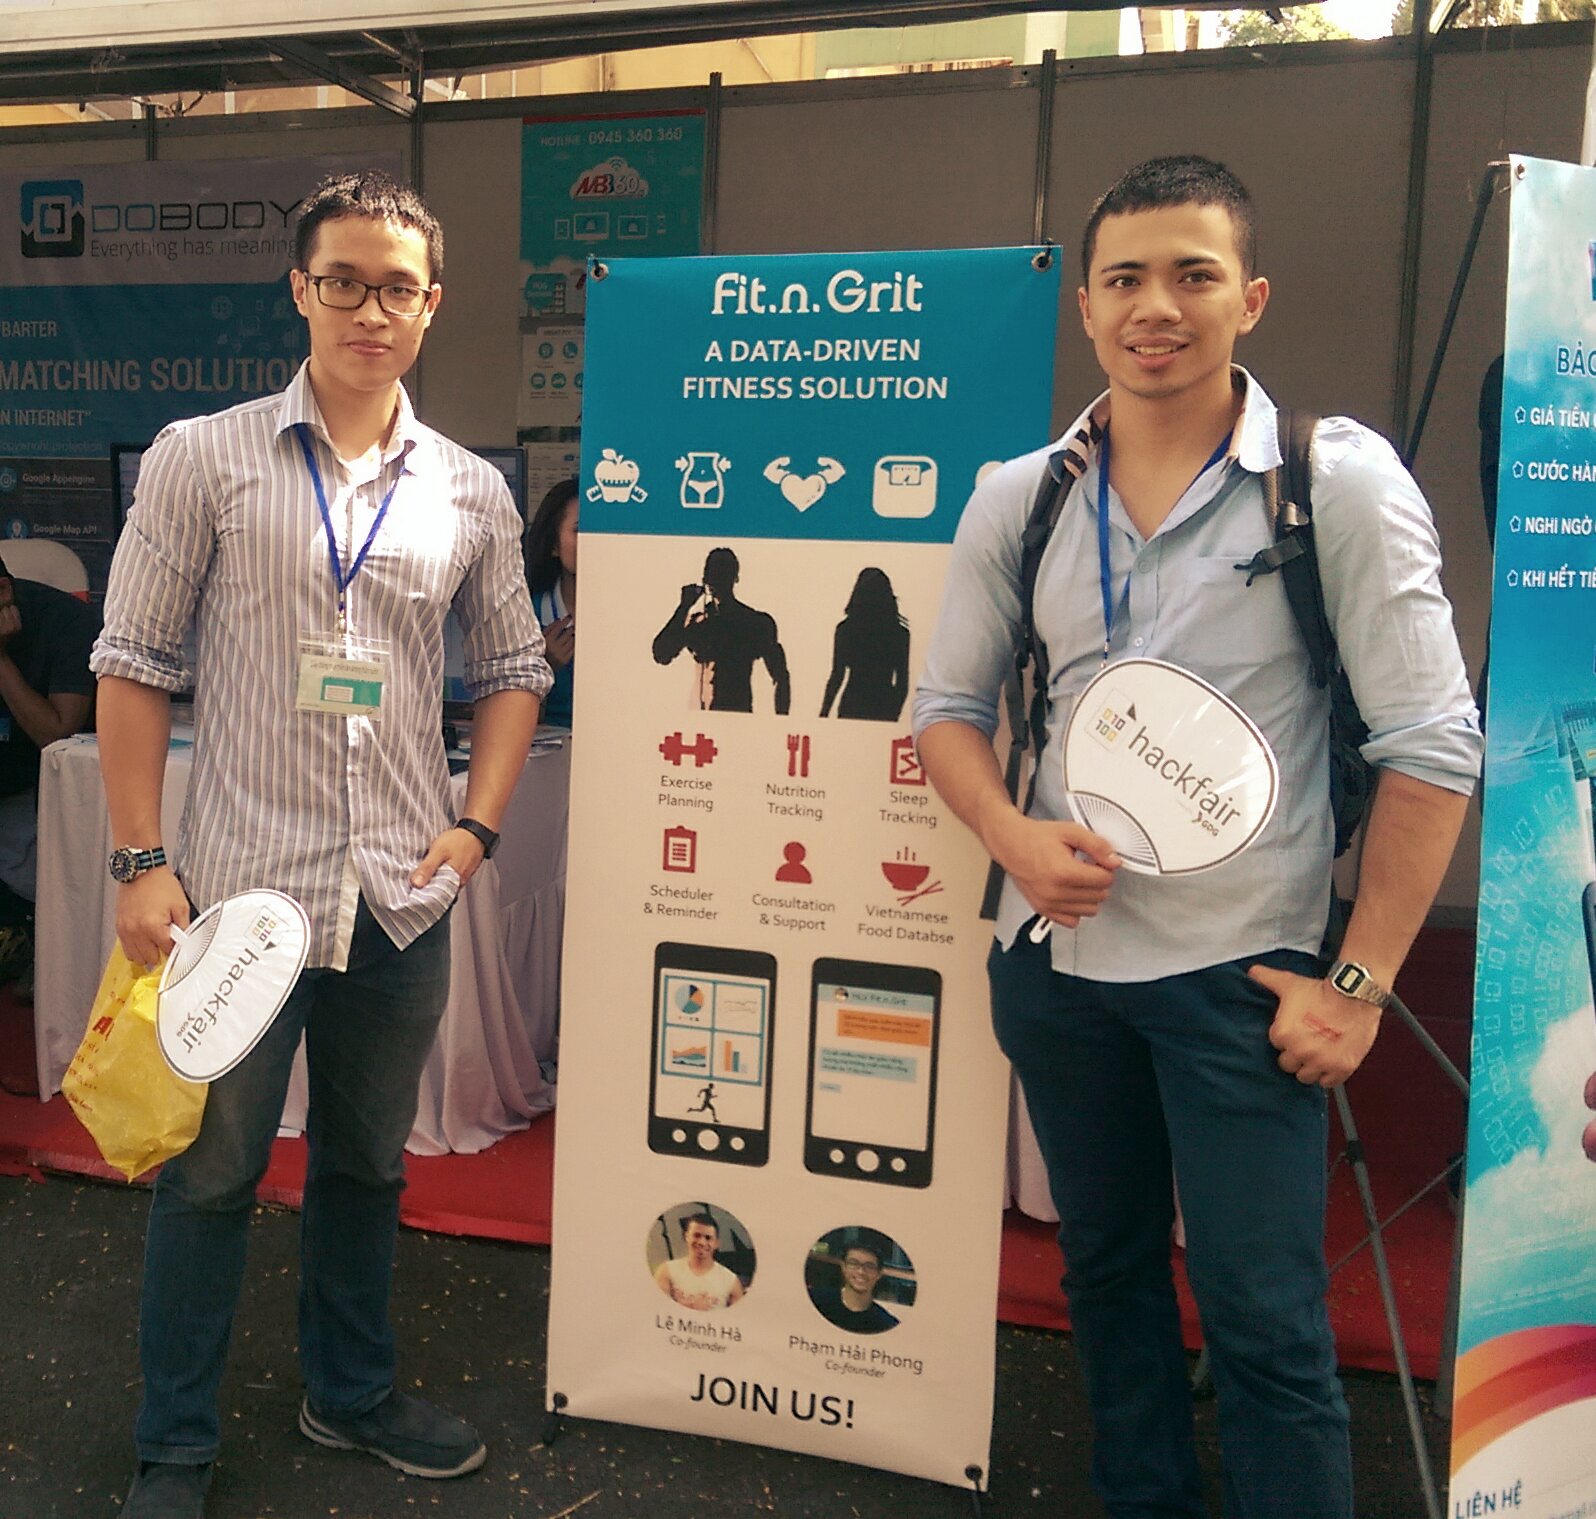 Phạm Hải Phong (trái) và đối tác là bạn Lê Minh Hà đồng sáng lập ứng dụng điện thoại Fit.n.Grit.